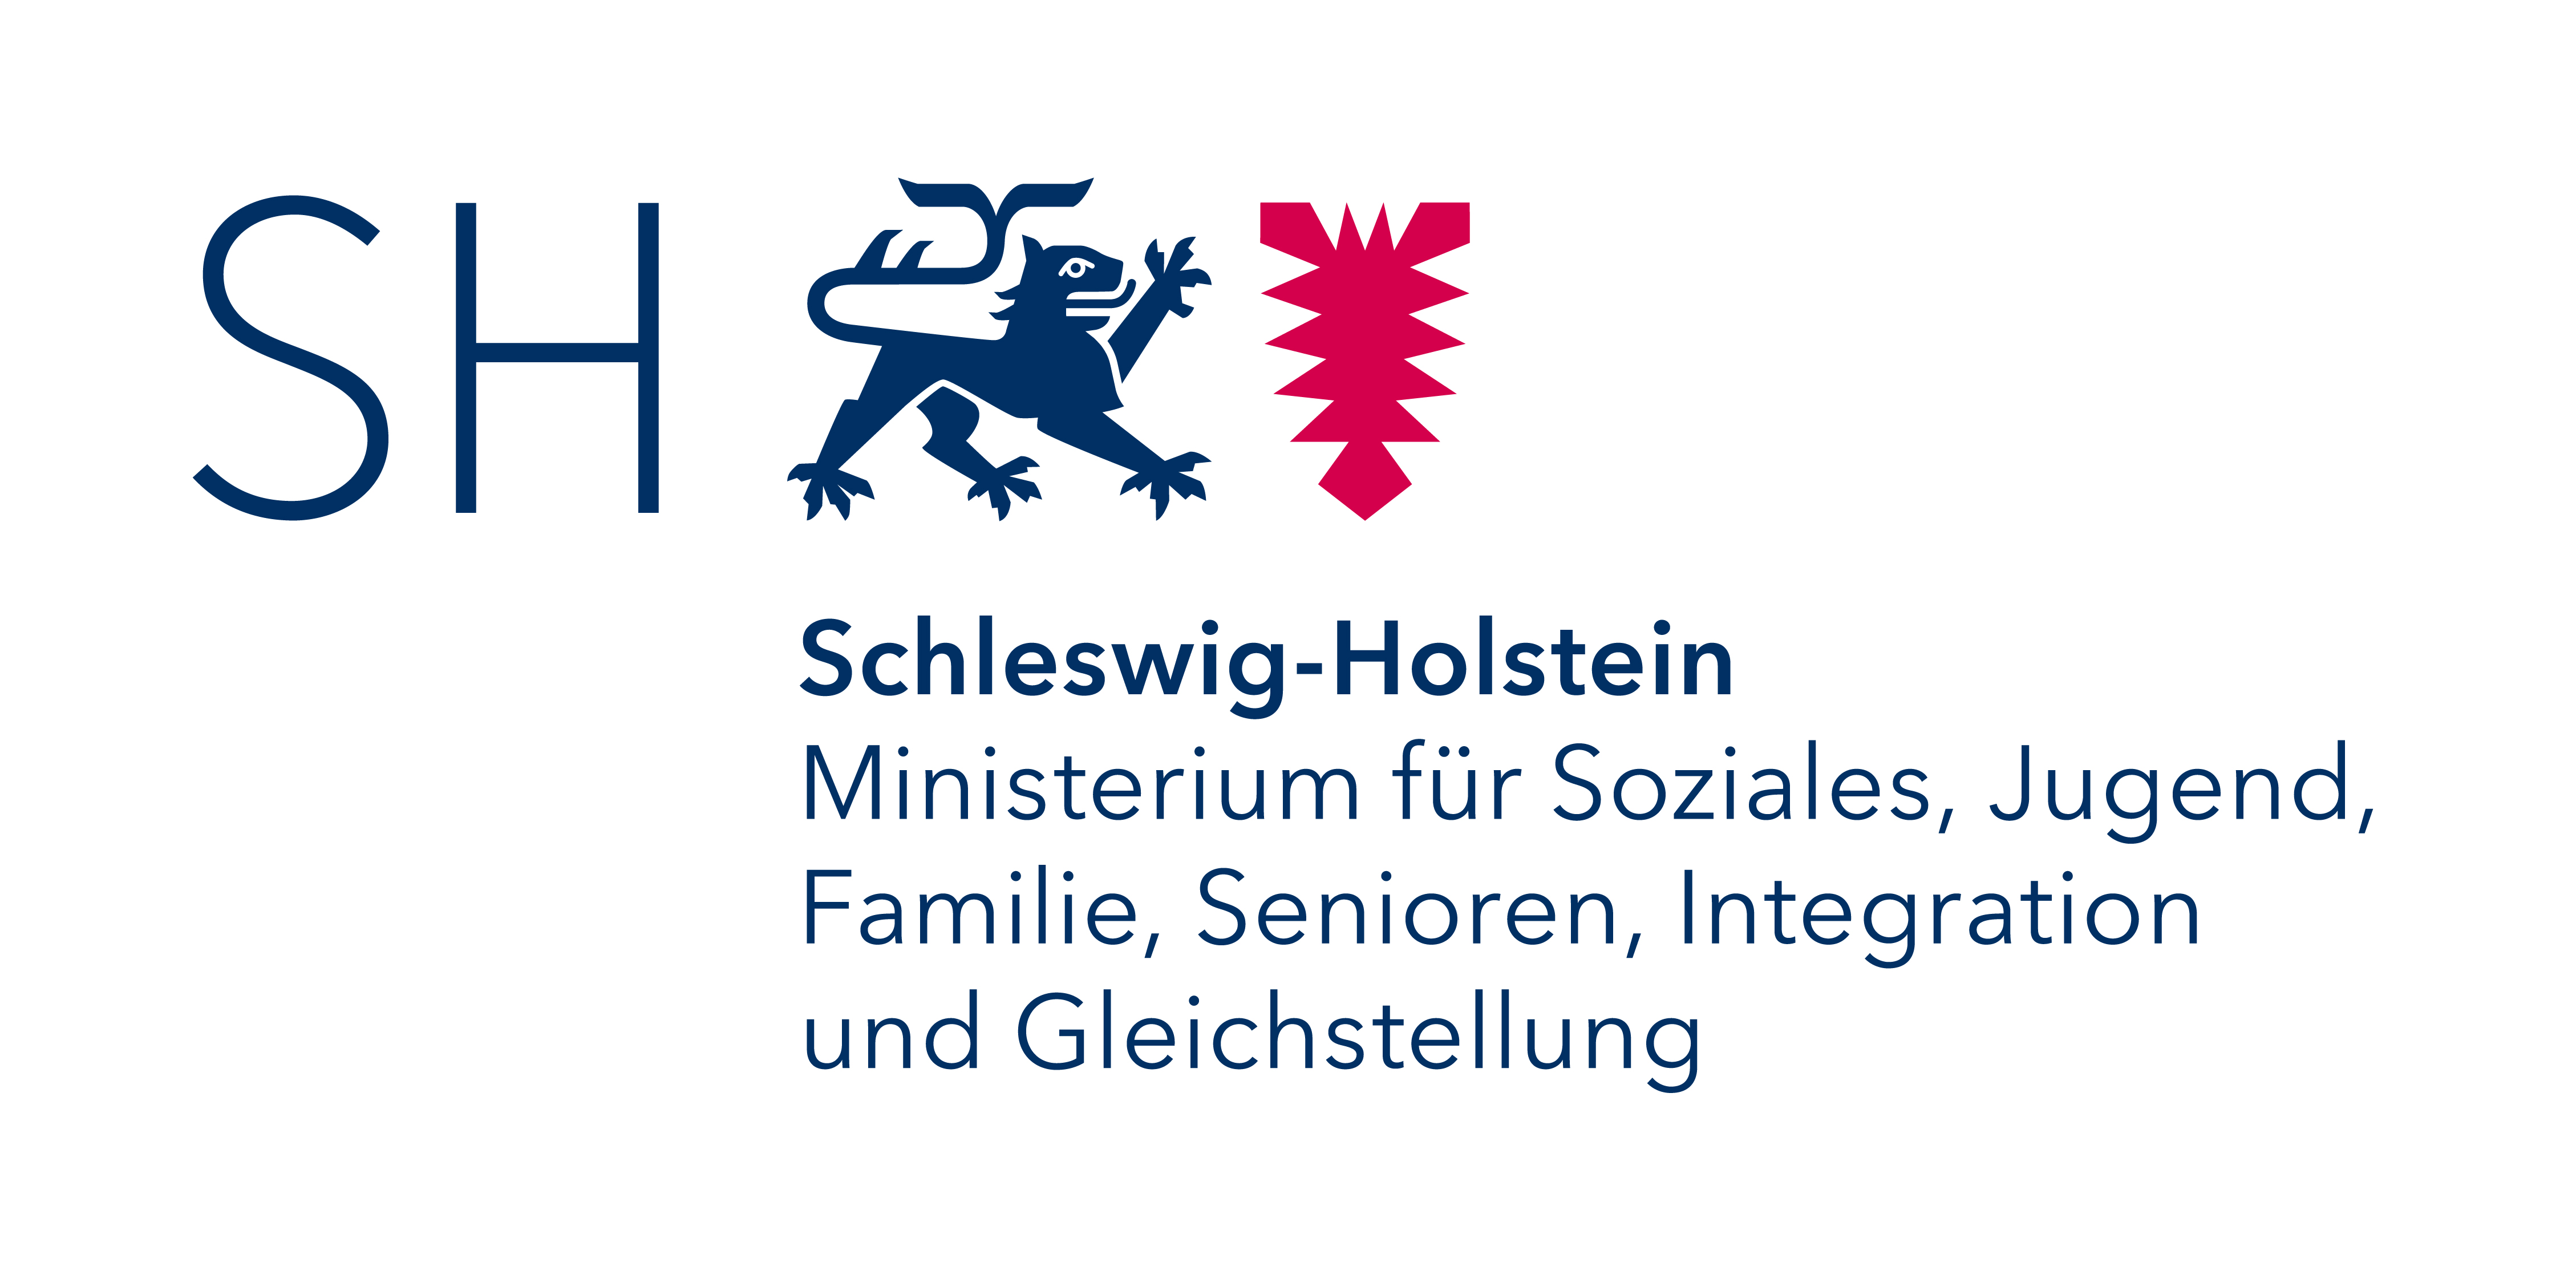 Schleswig-Holstein Ministerium für Soziales, Jugend, Familie, Senioren, Integration und Gleichstellung